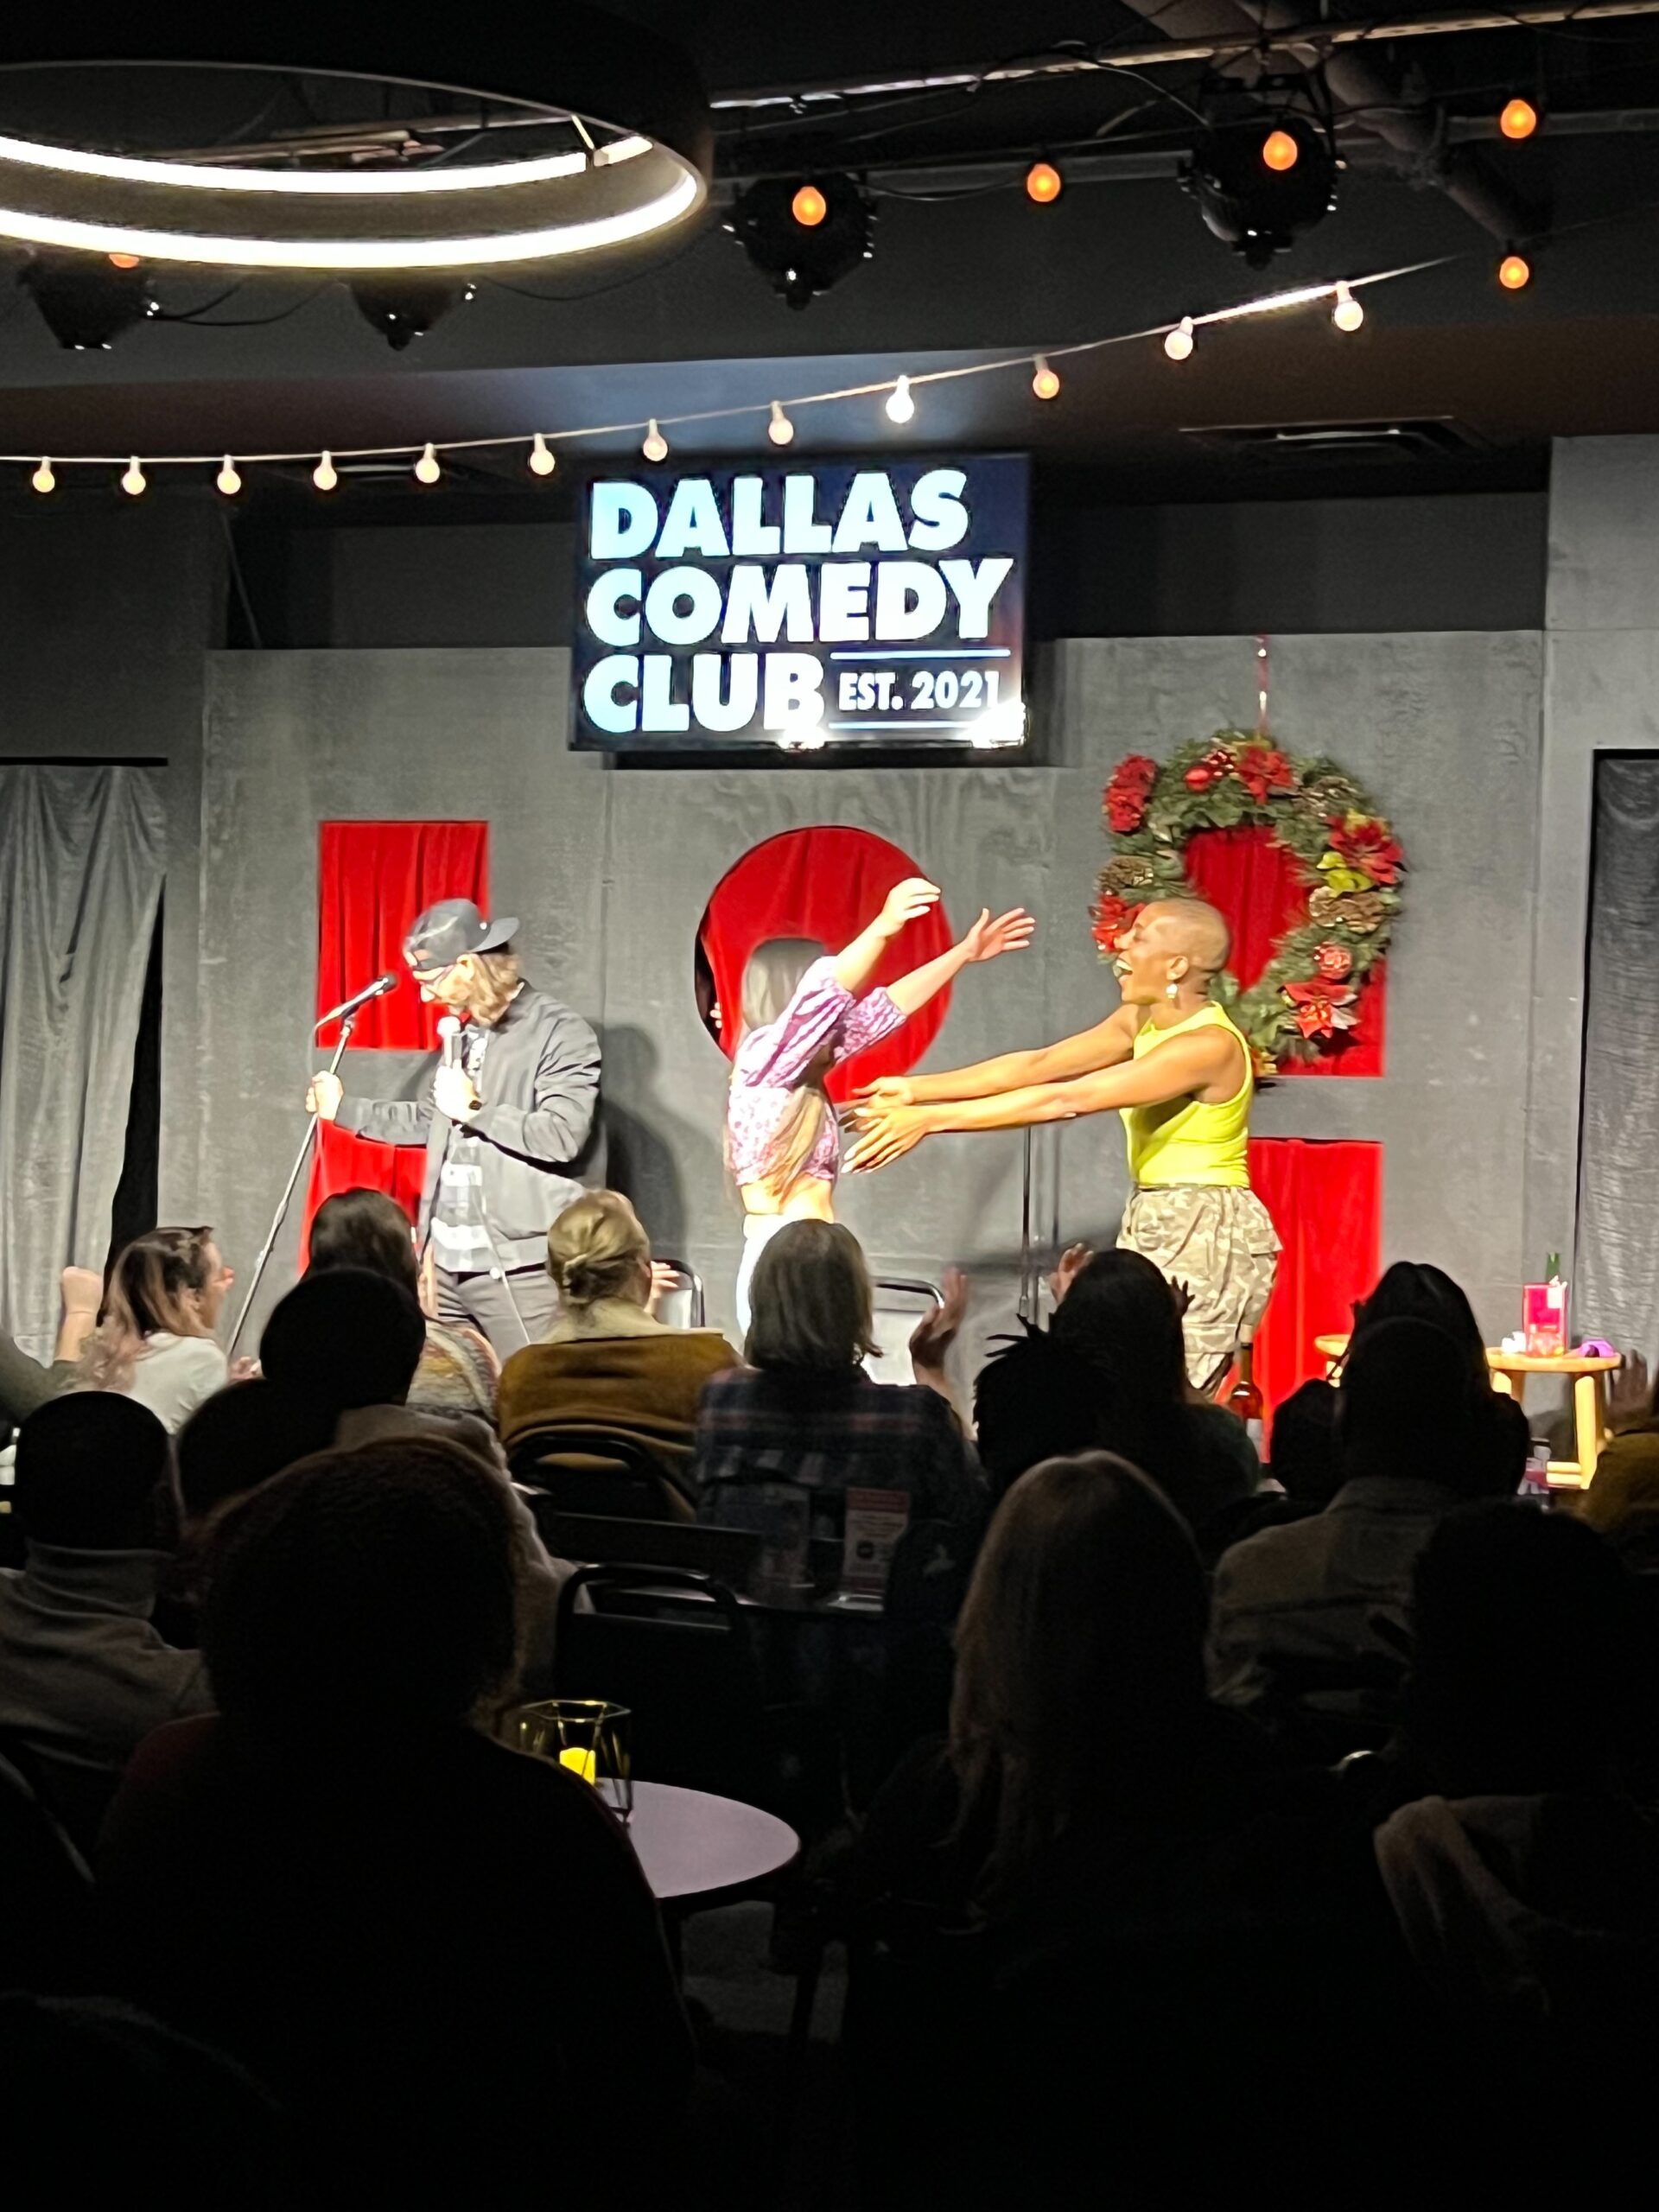 The Love Club Dallas Comedy Club